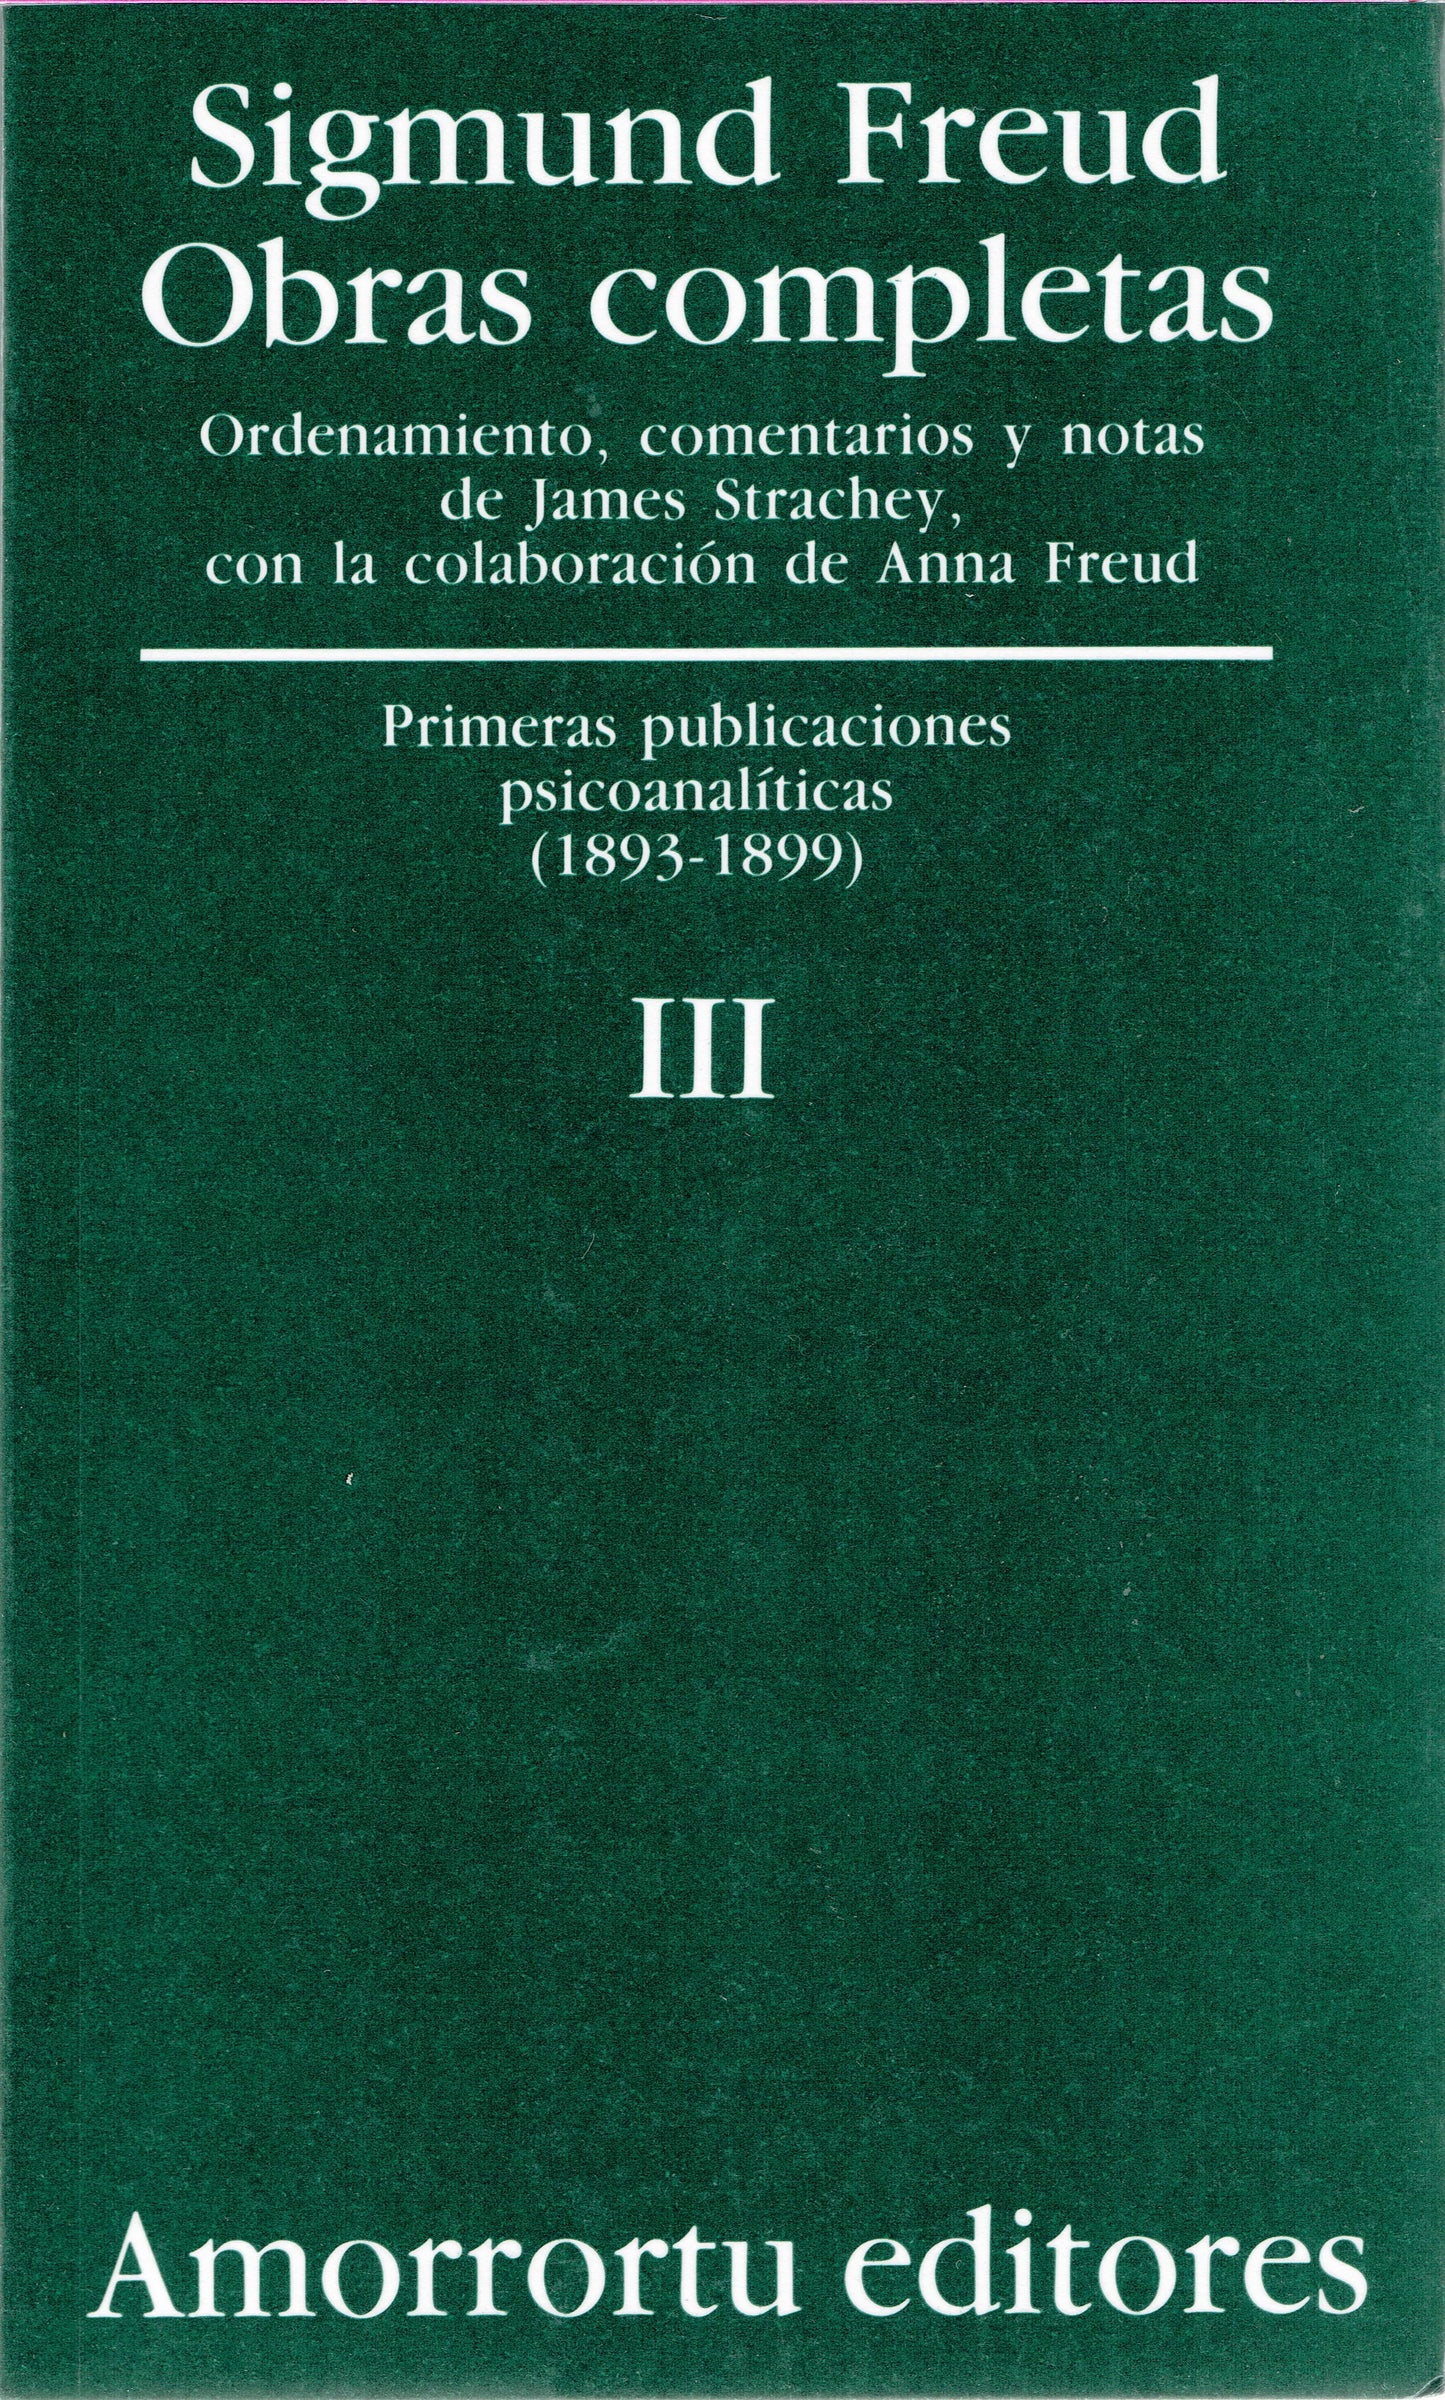 OBRAS COMPLETAS. SIGMUND FREUD: VOL. III. PRIMERAS PUBLICACIONES PSICOANALÍTICAS (1893-1899)